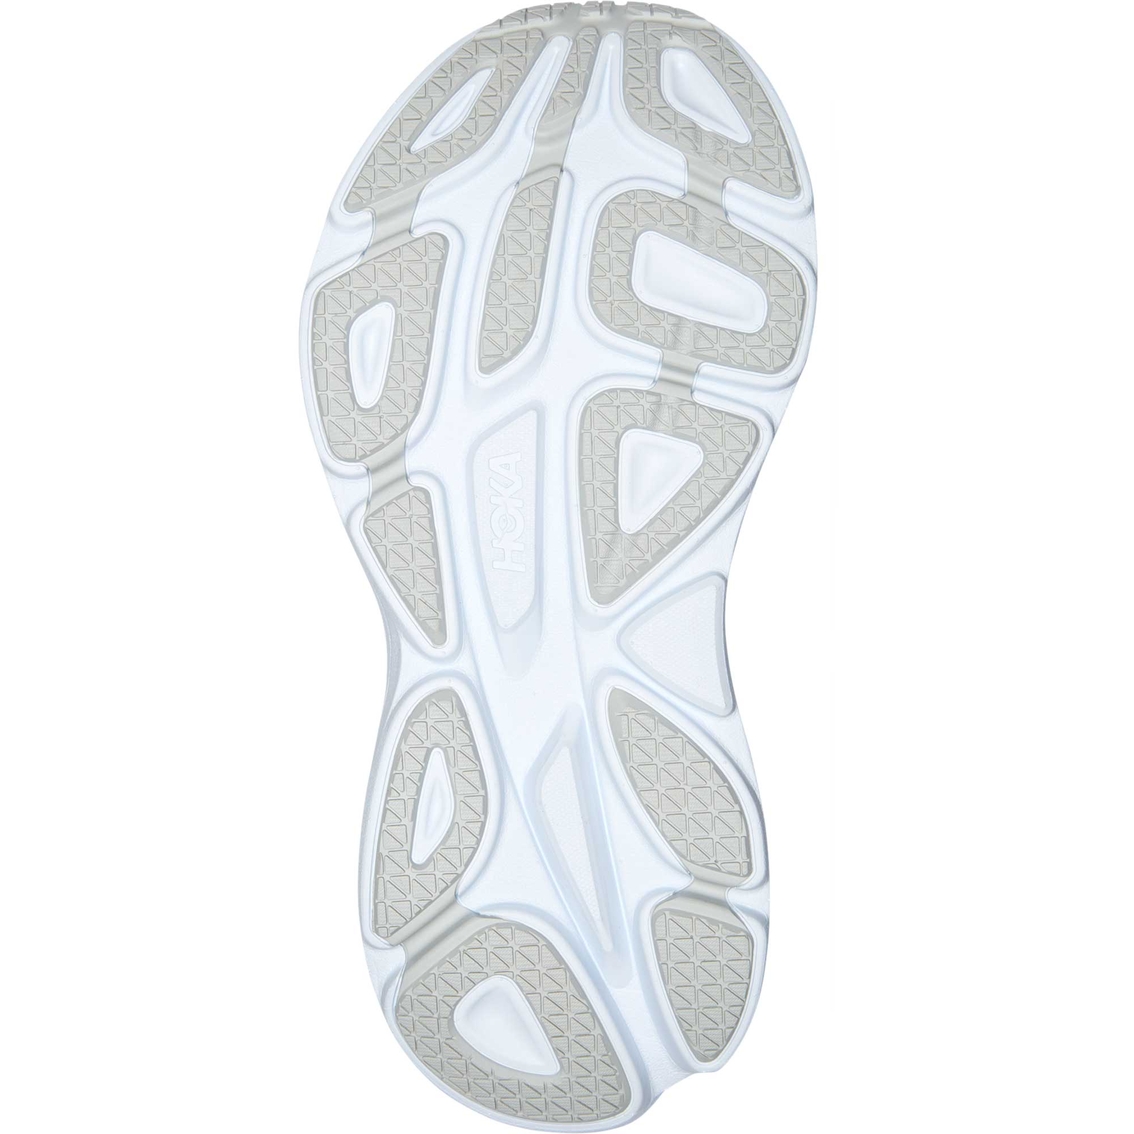 Hoka Women's Bondi 8 Running Shoes - Image 8 of 8